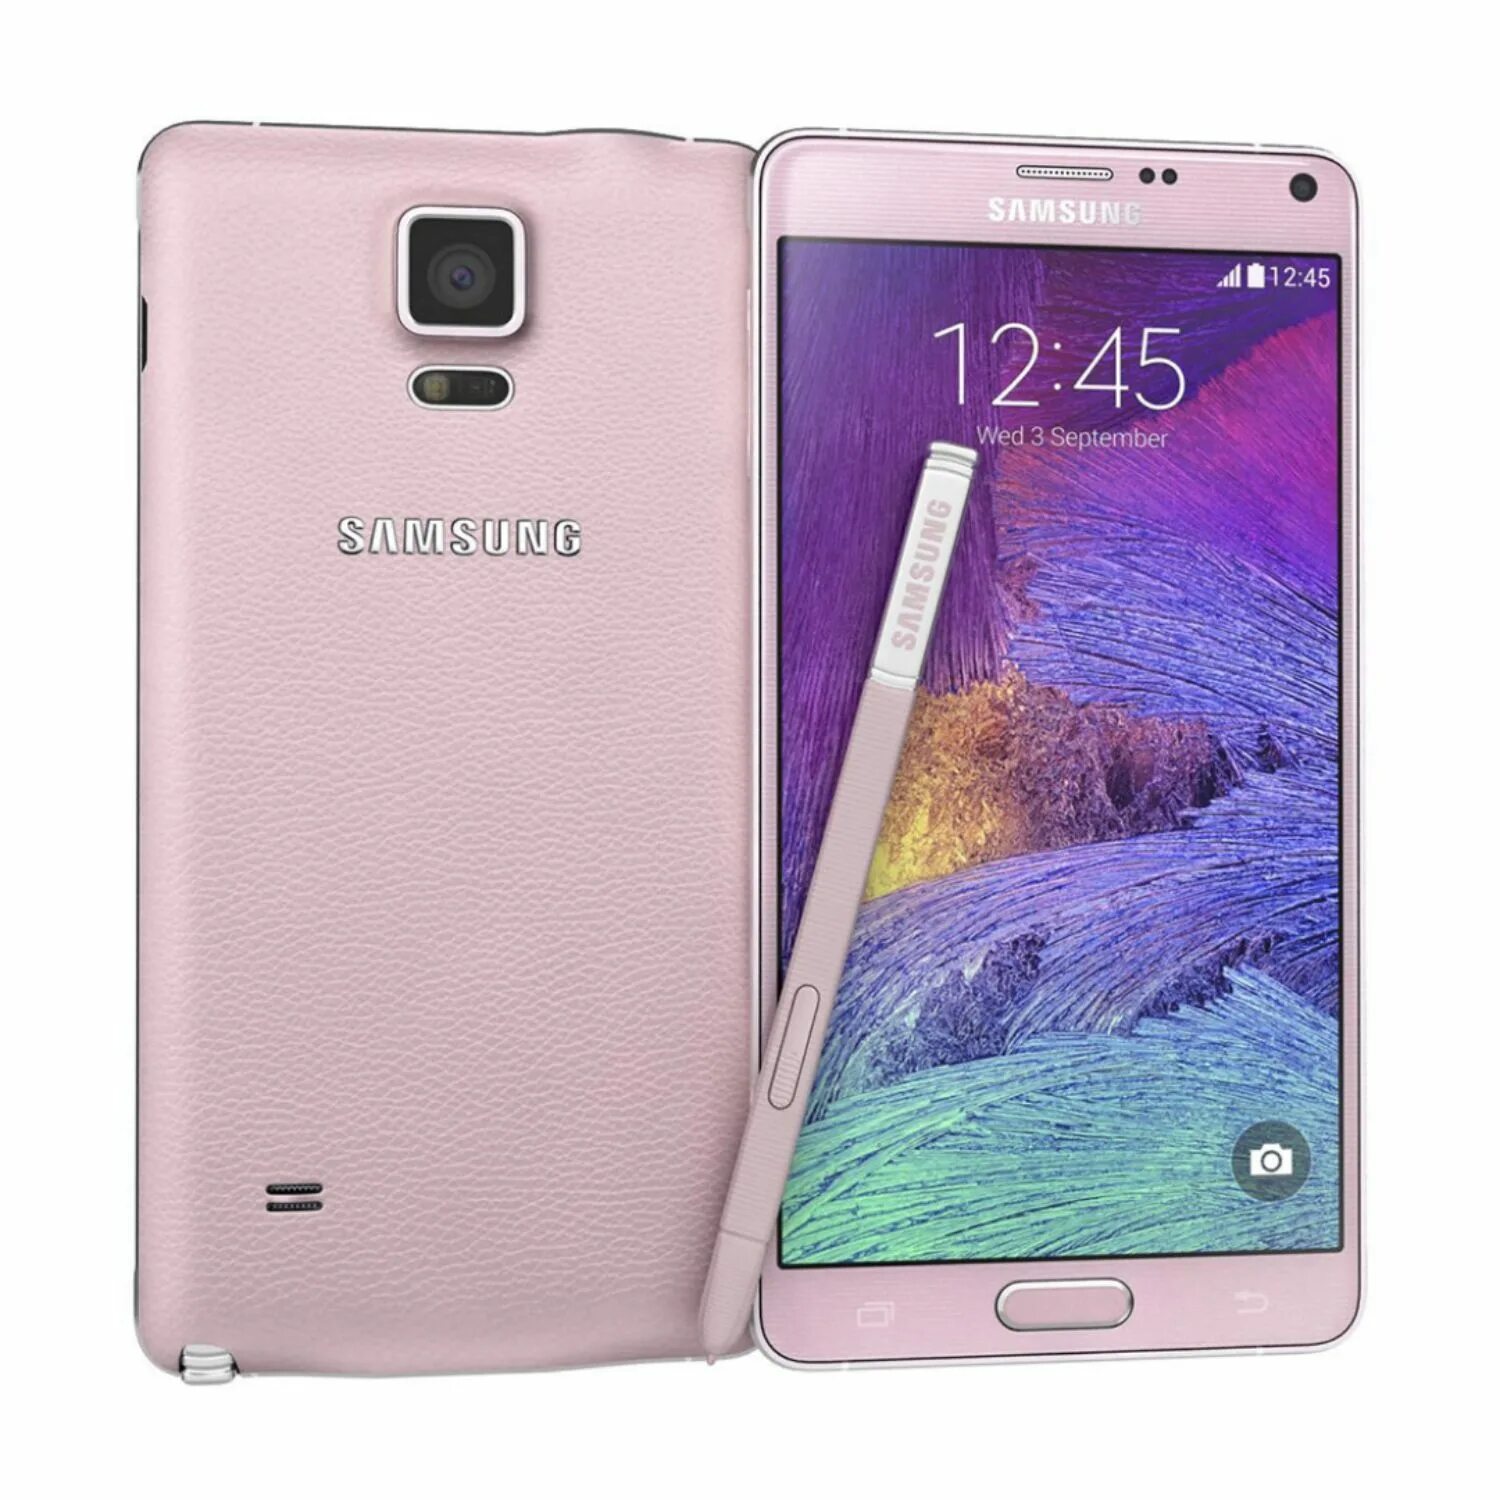 Samsung Galaxy Note 4. Samsung n910 Galaxy Note 4. Samsung Note 4 Plus. UI Samsung Galaxy Note 4.